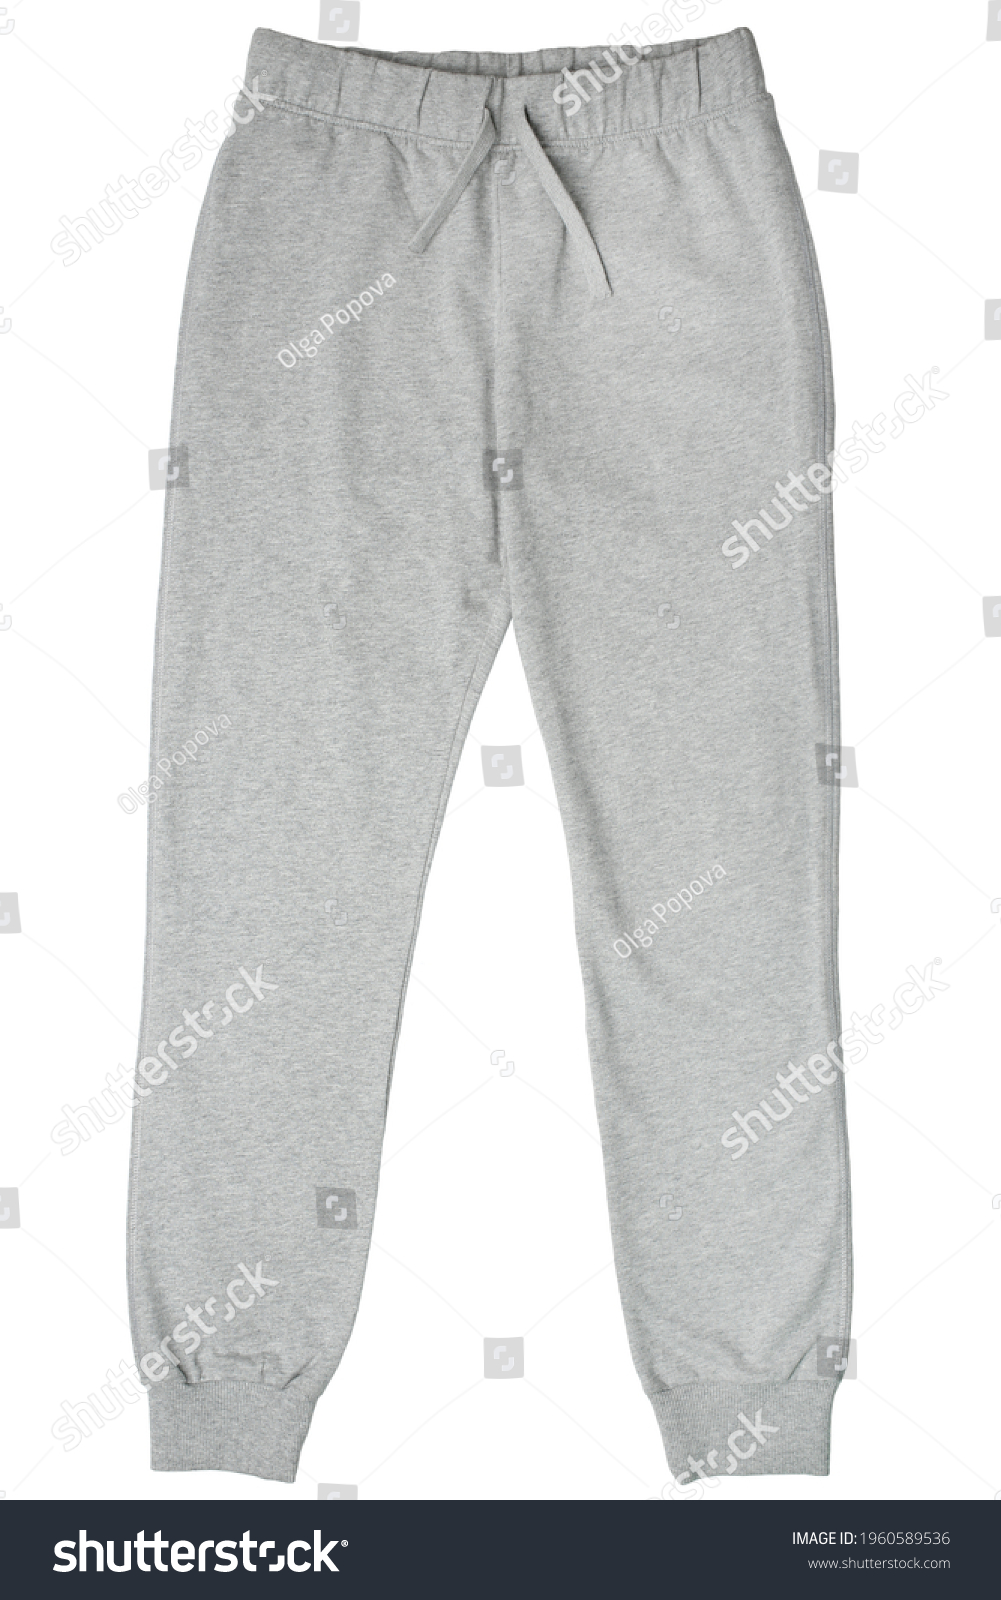 84,999 Grey pants Images, Stock Photos & Vectors | Shutterstock